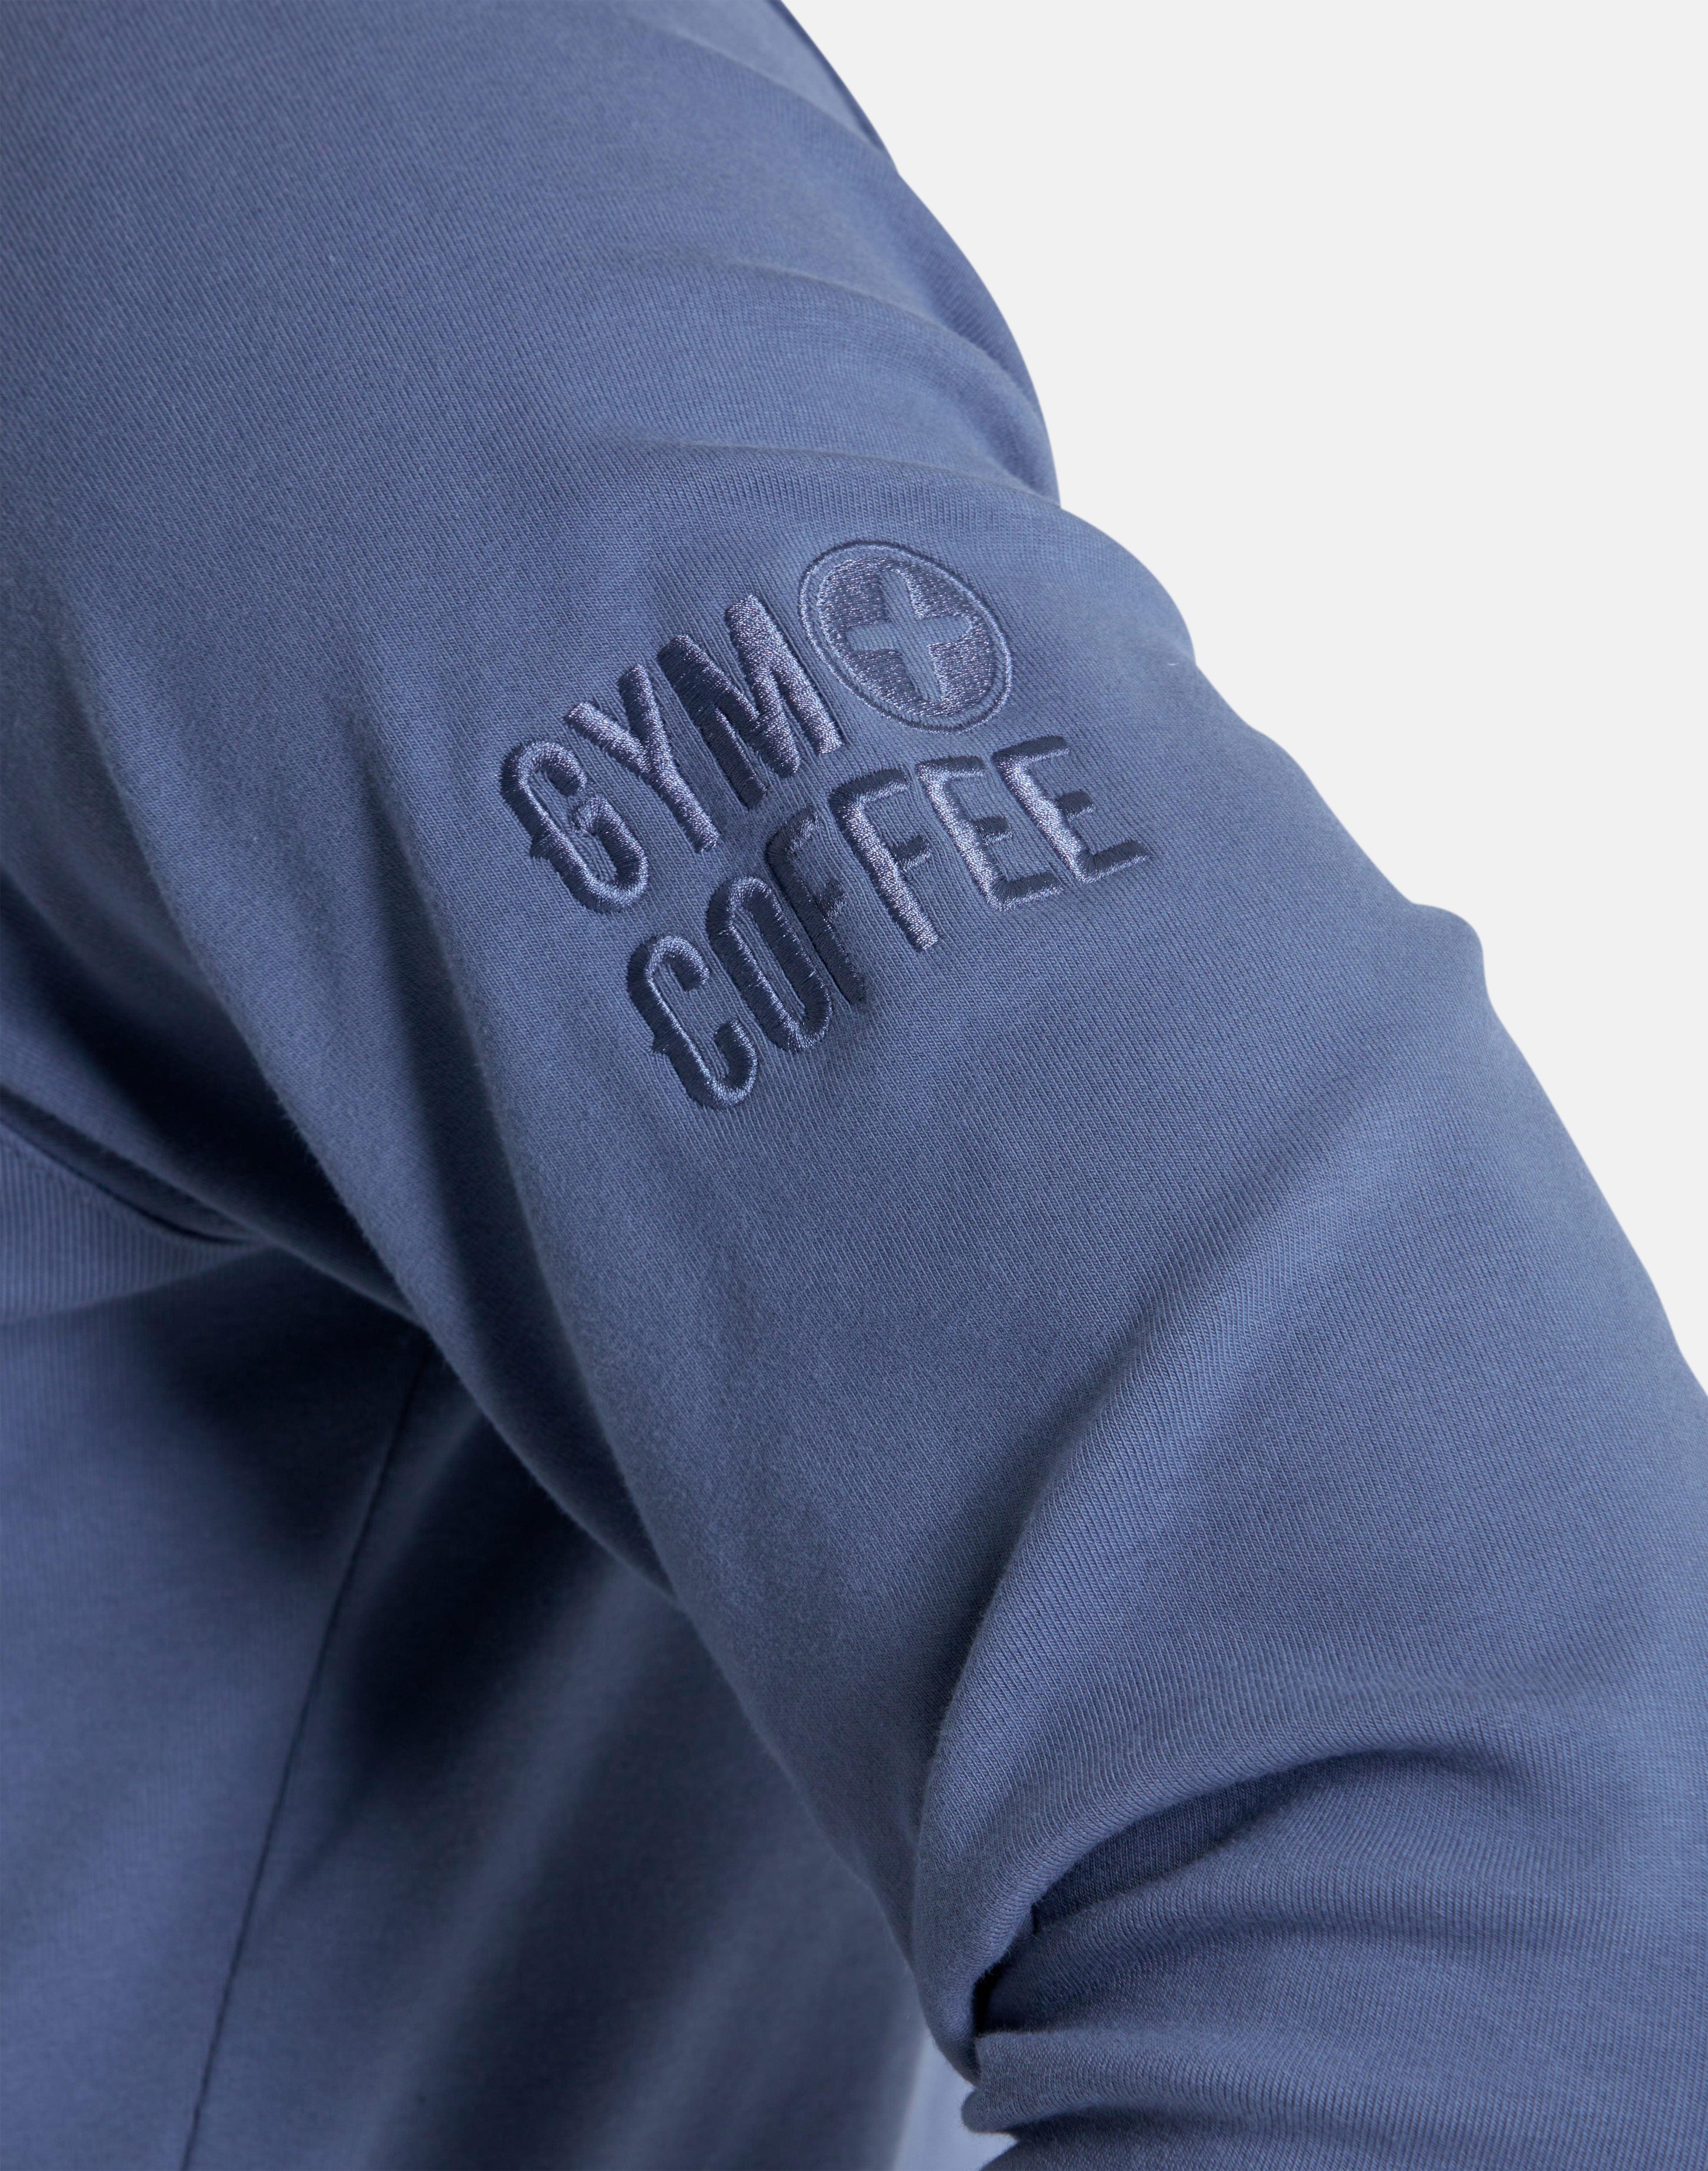 Essential Hoodie in Thunder Blue - Hoodies - Gym+Coffee